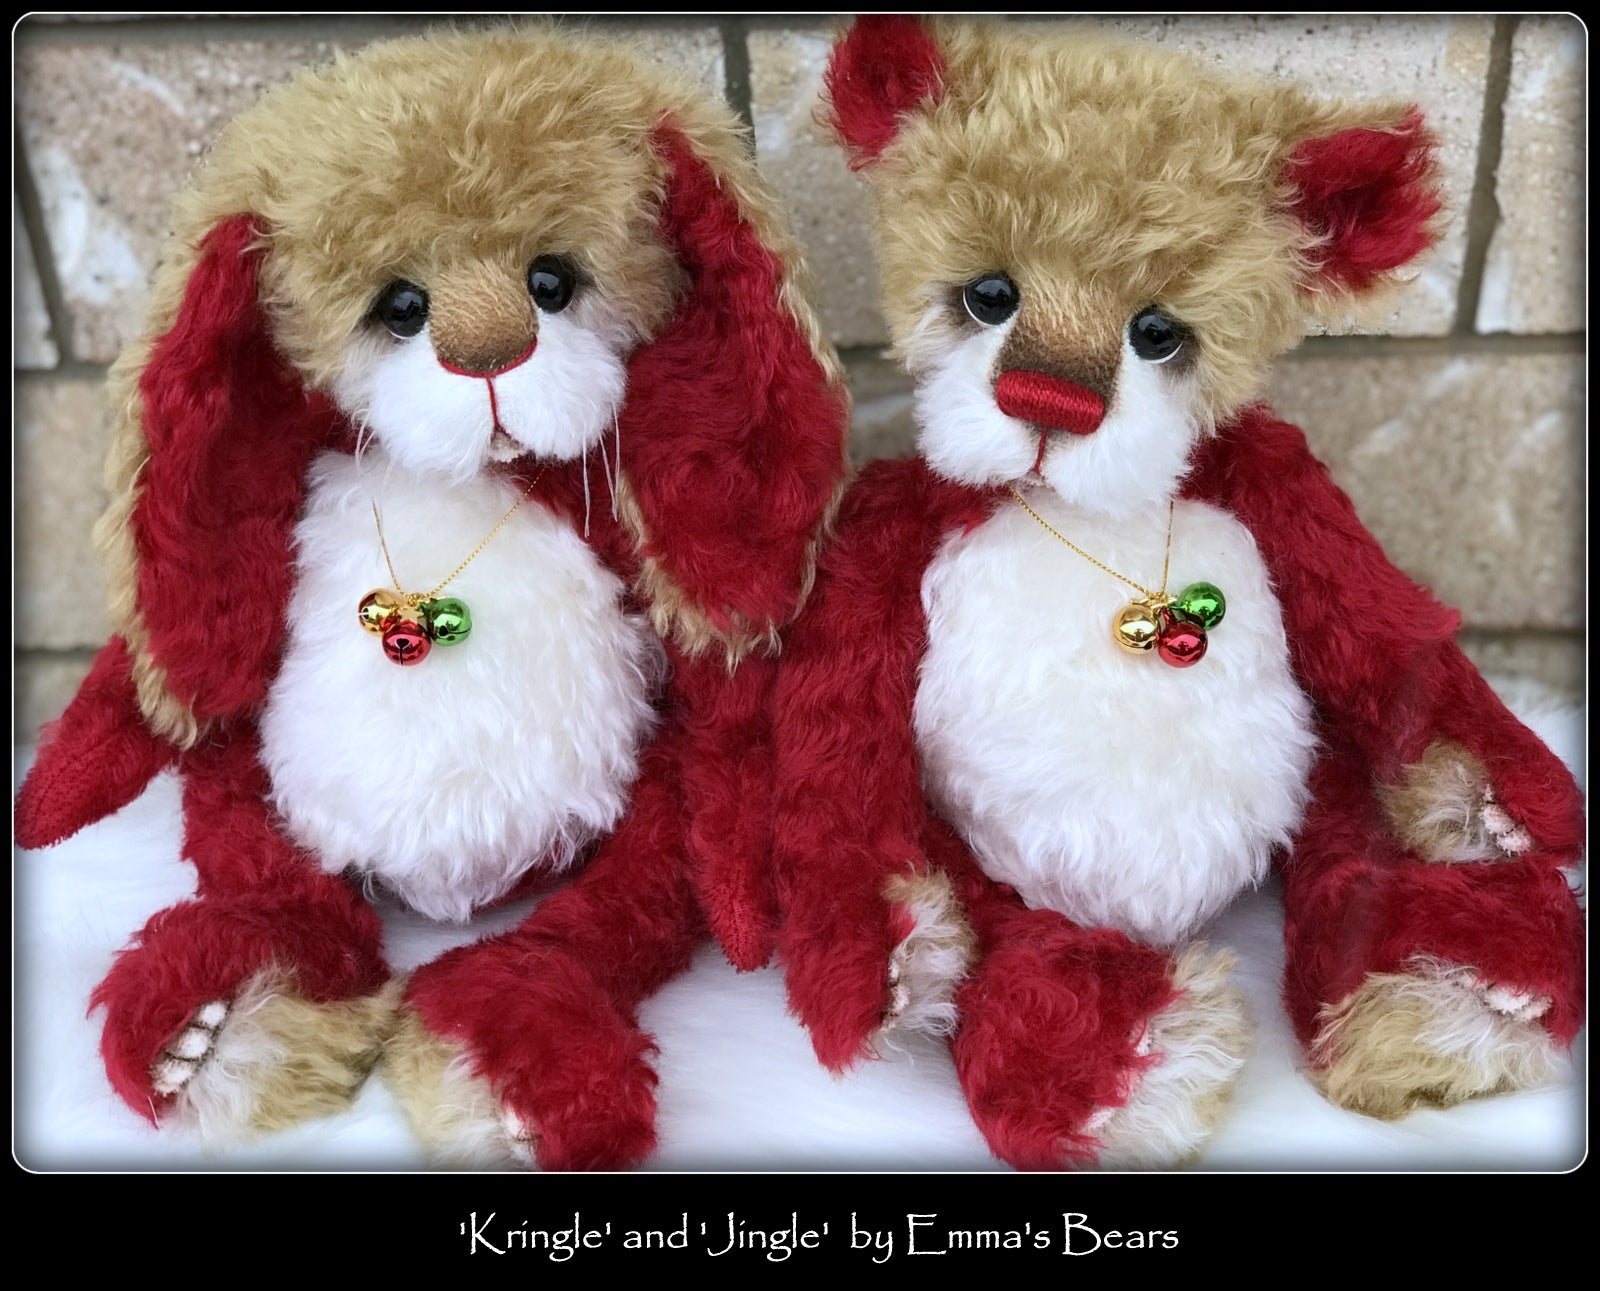 Jingle - 14" kid mohair Christmas artist bear by Emmas Bears - OOAK